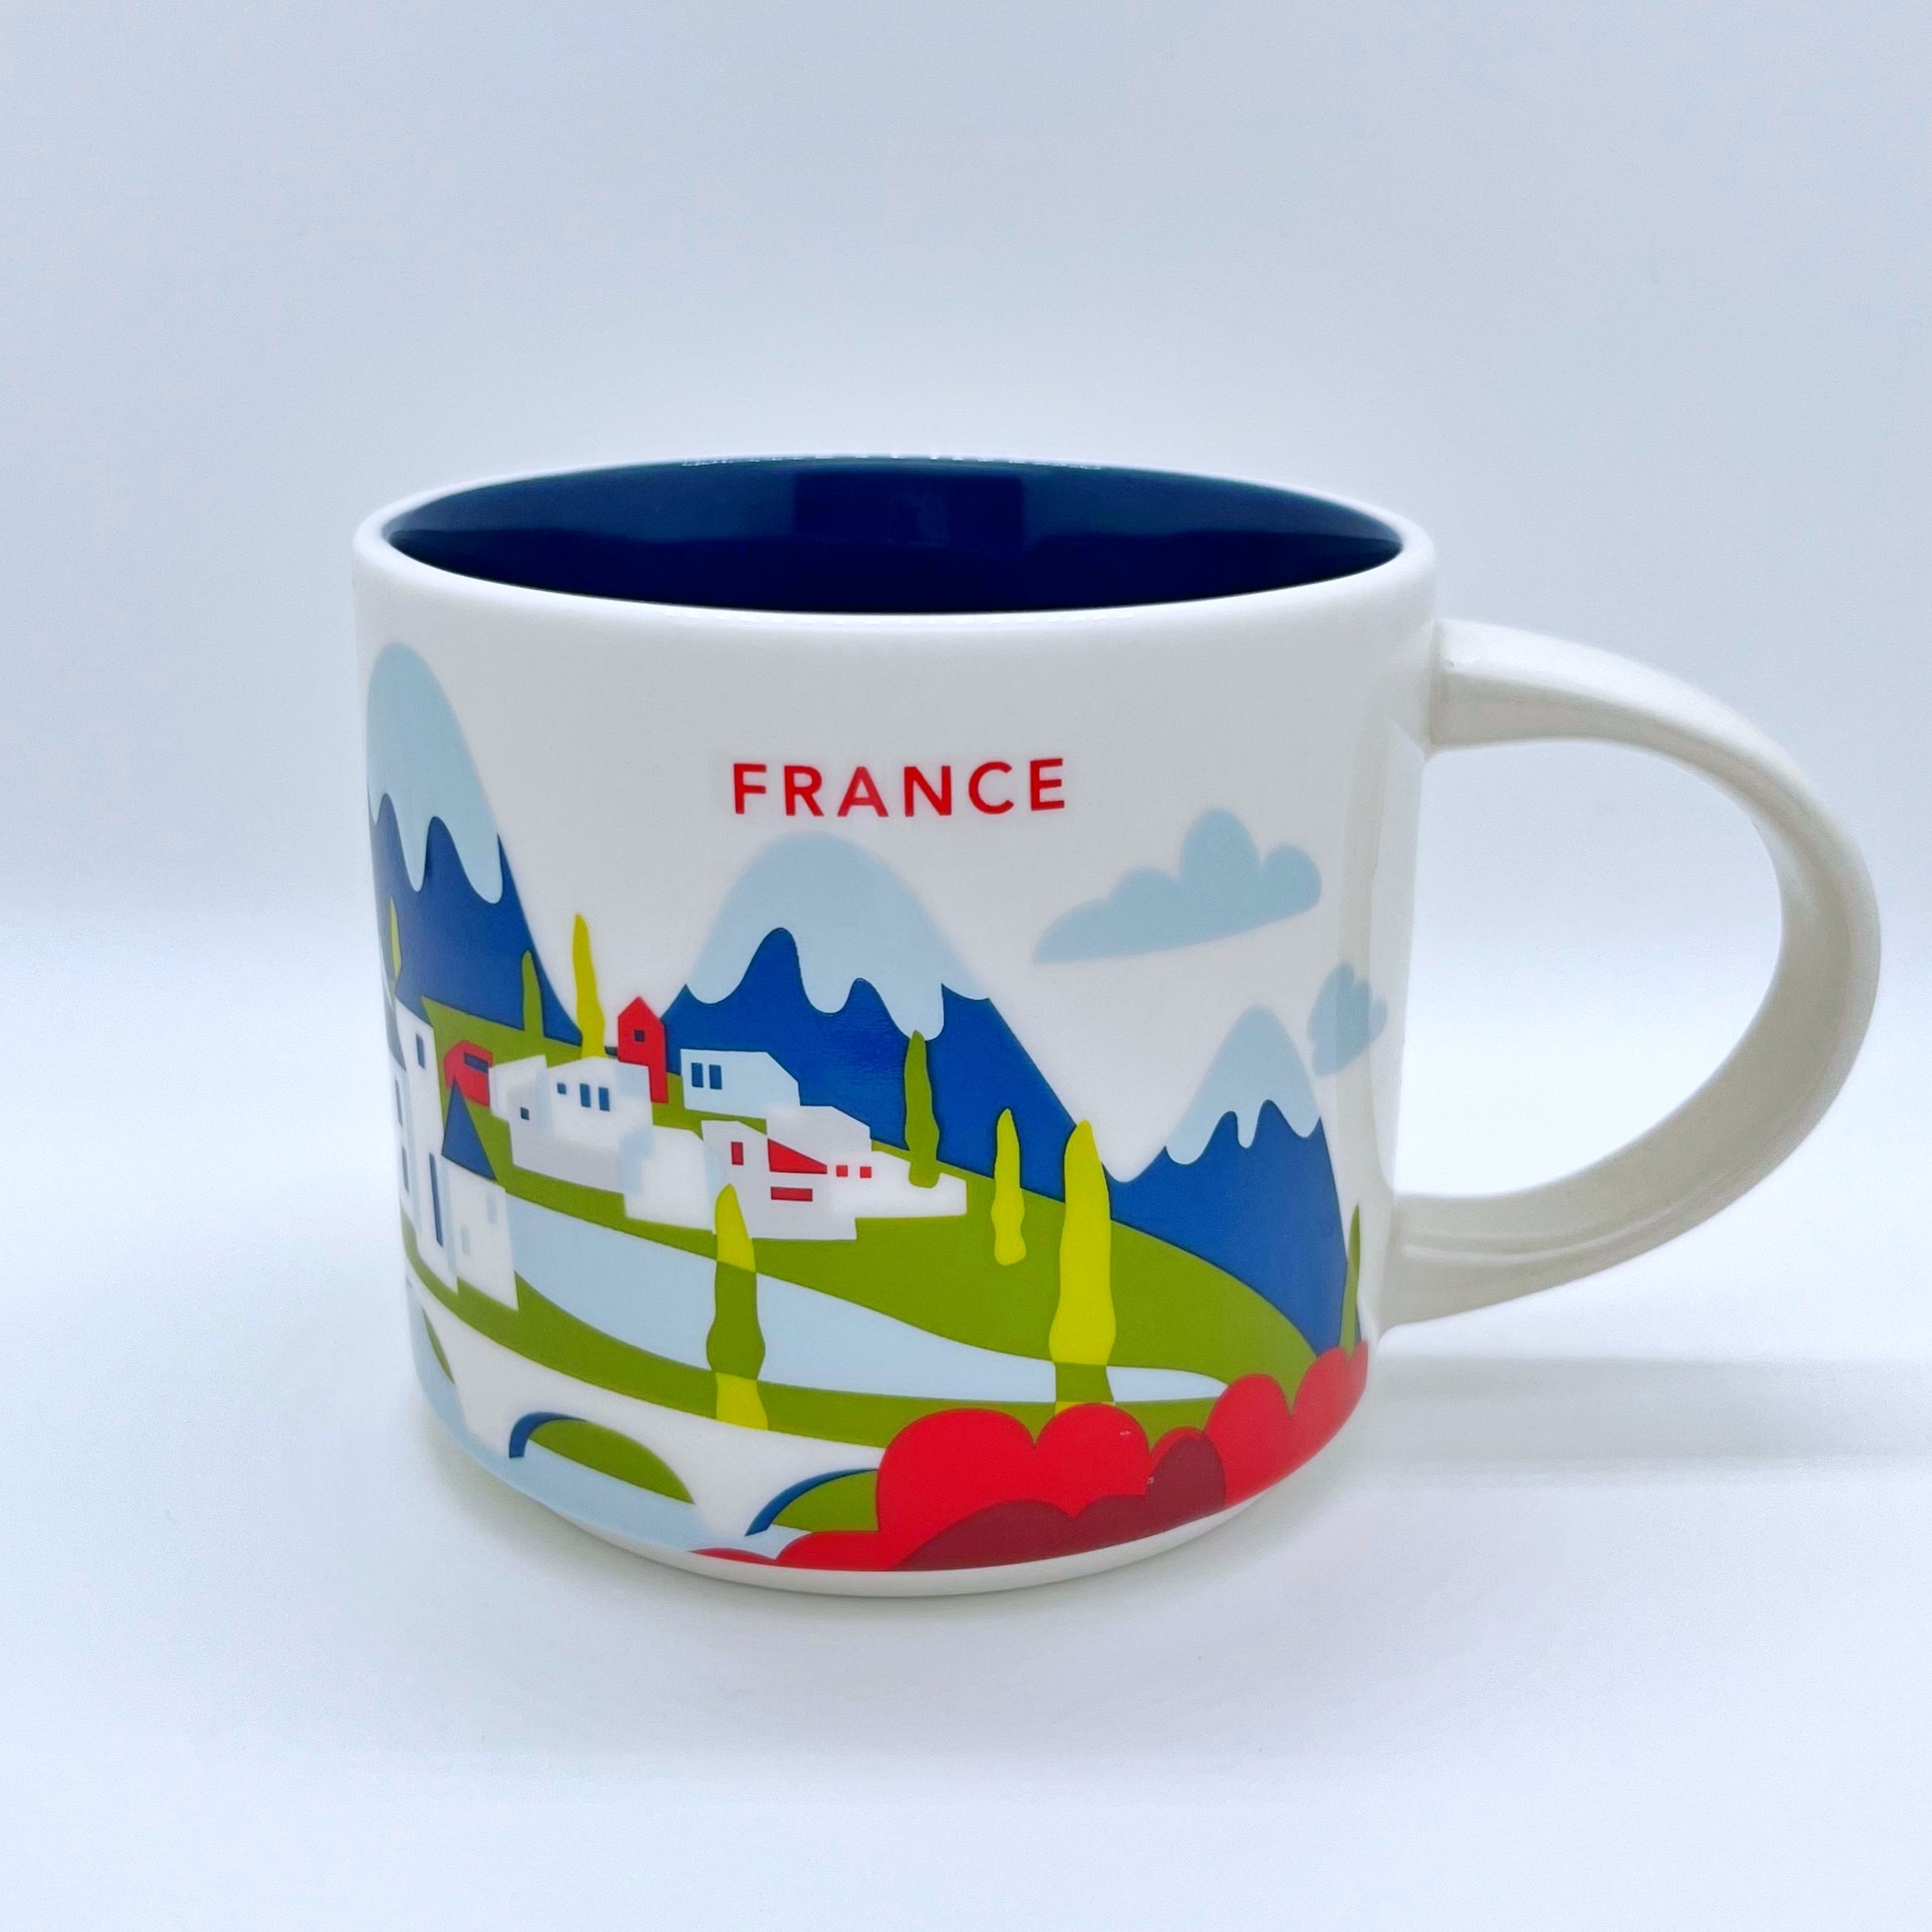 Kaffee Tee und Cappuccino Tasse von Starbucks mit gemalten Bildern aus dem Land Frankreich